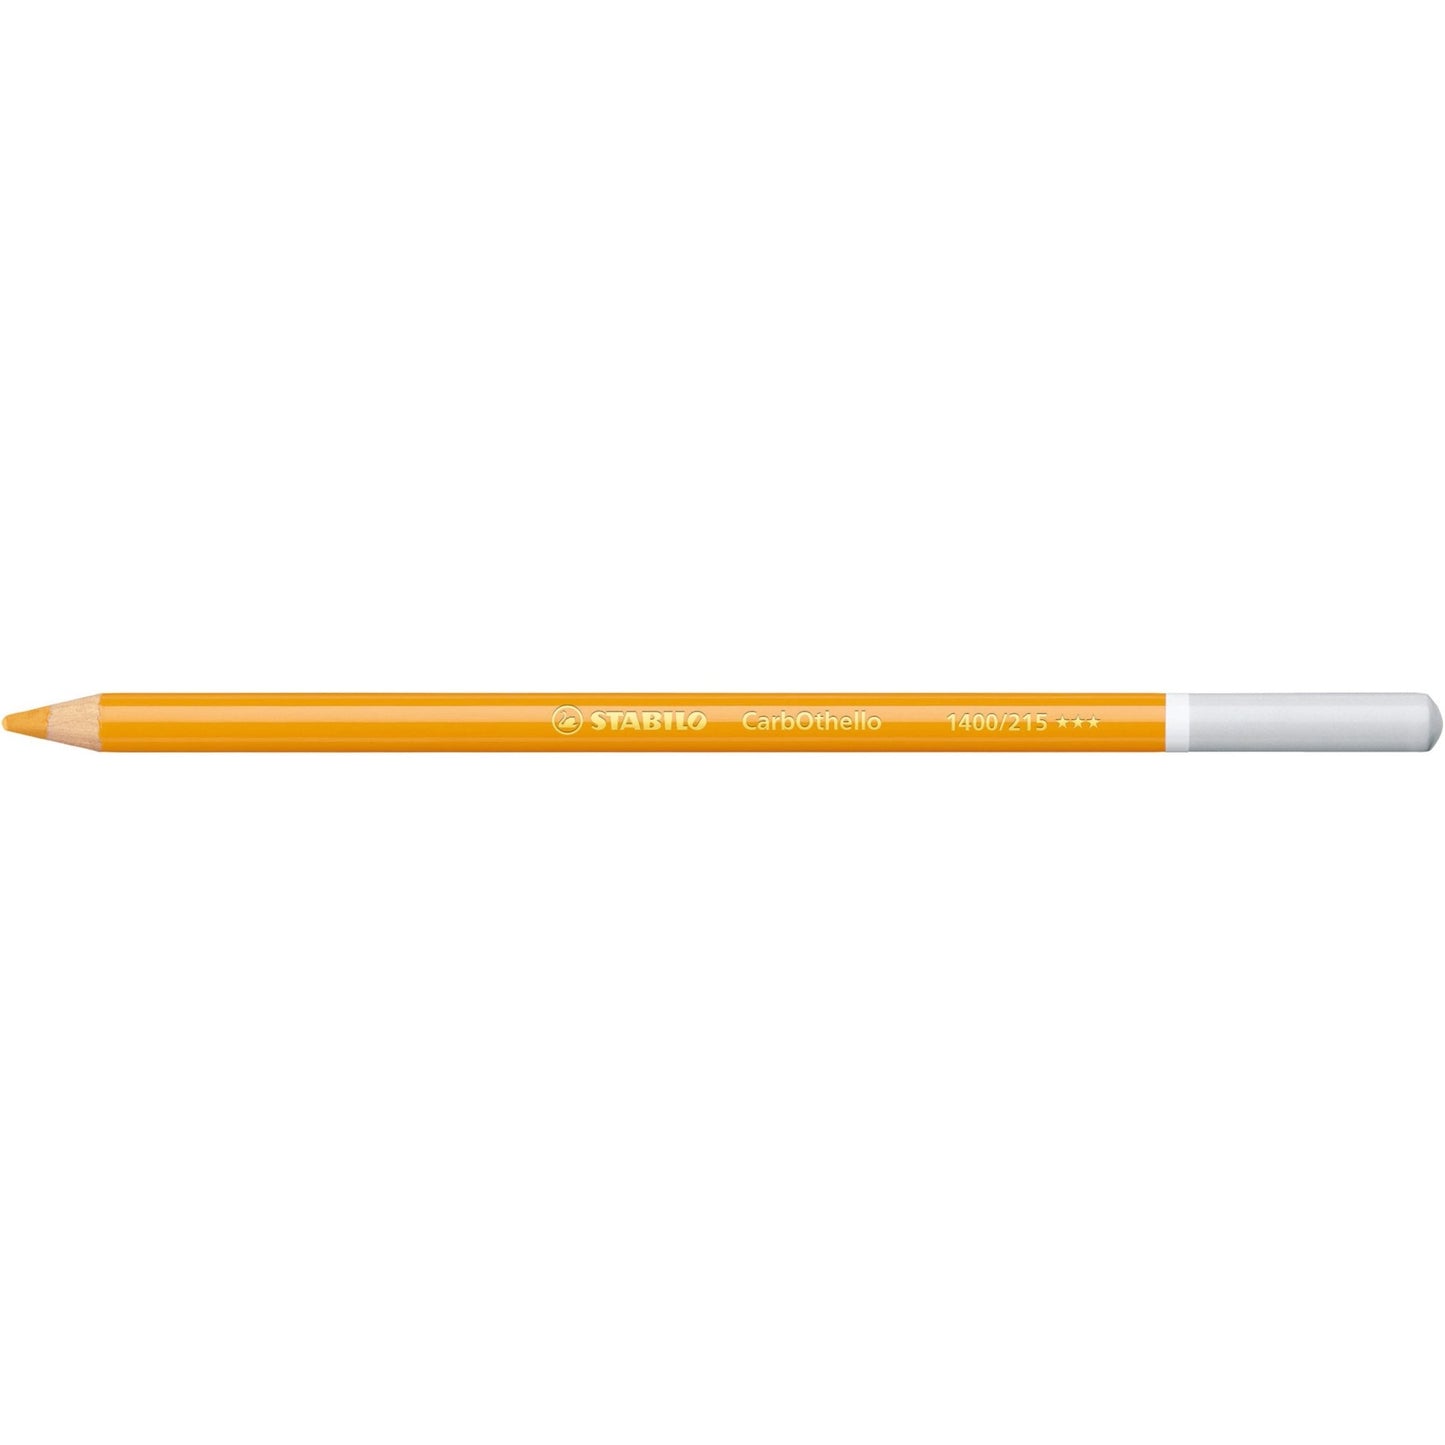 Stabilo CarbOthello Coloured Pastel Pencil 215 Indian Yellow - theartshop.com.au